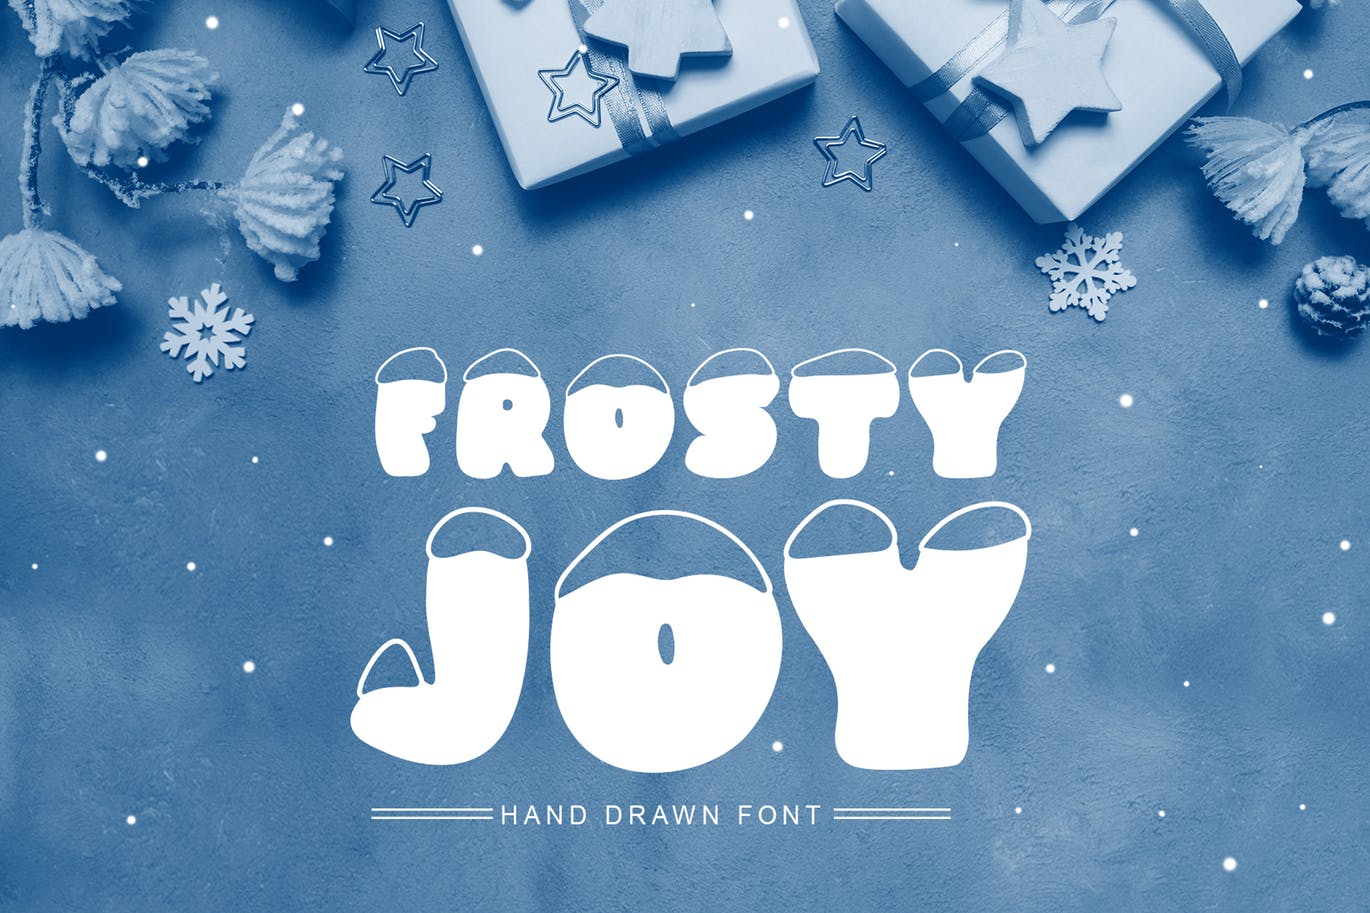 斯堪的纳维亚风格可爱积雪字体16图库精选 Frosty Joy Hand Drawn Display Font插图